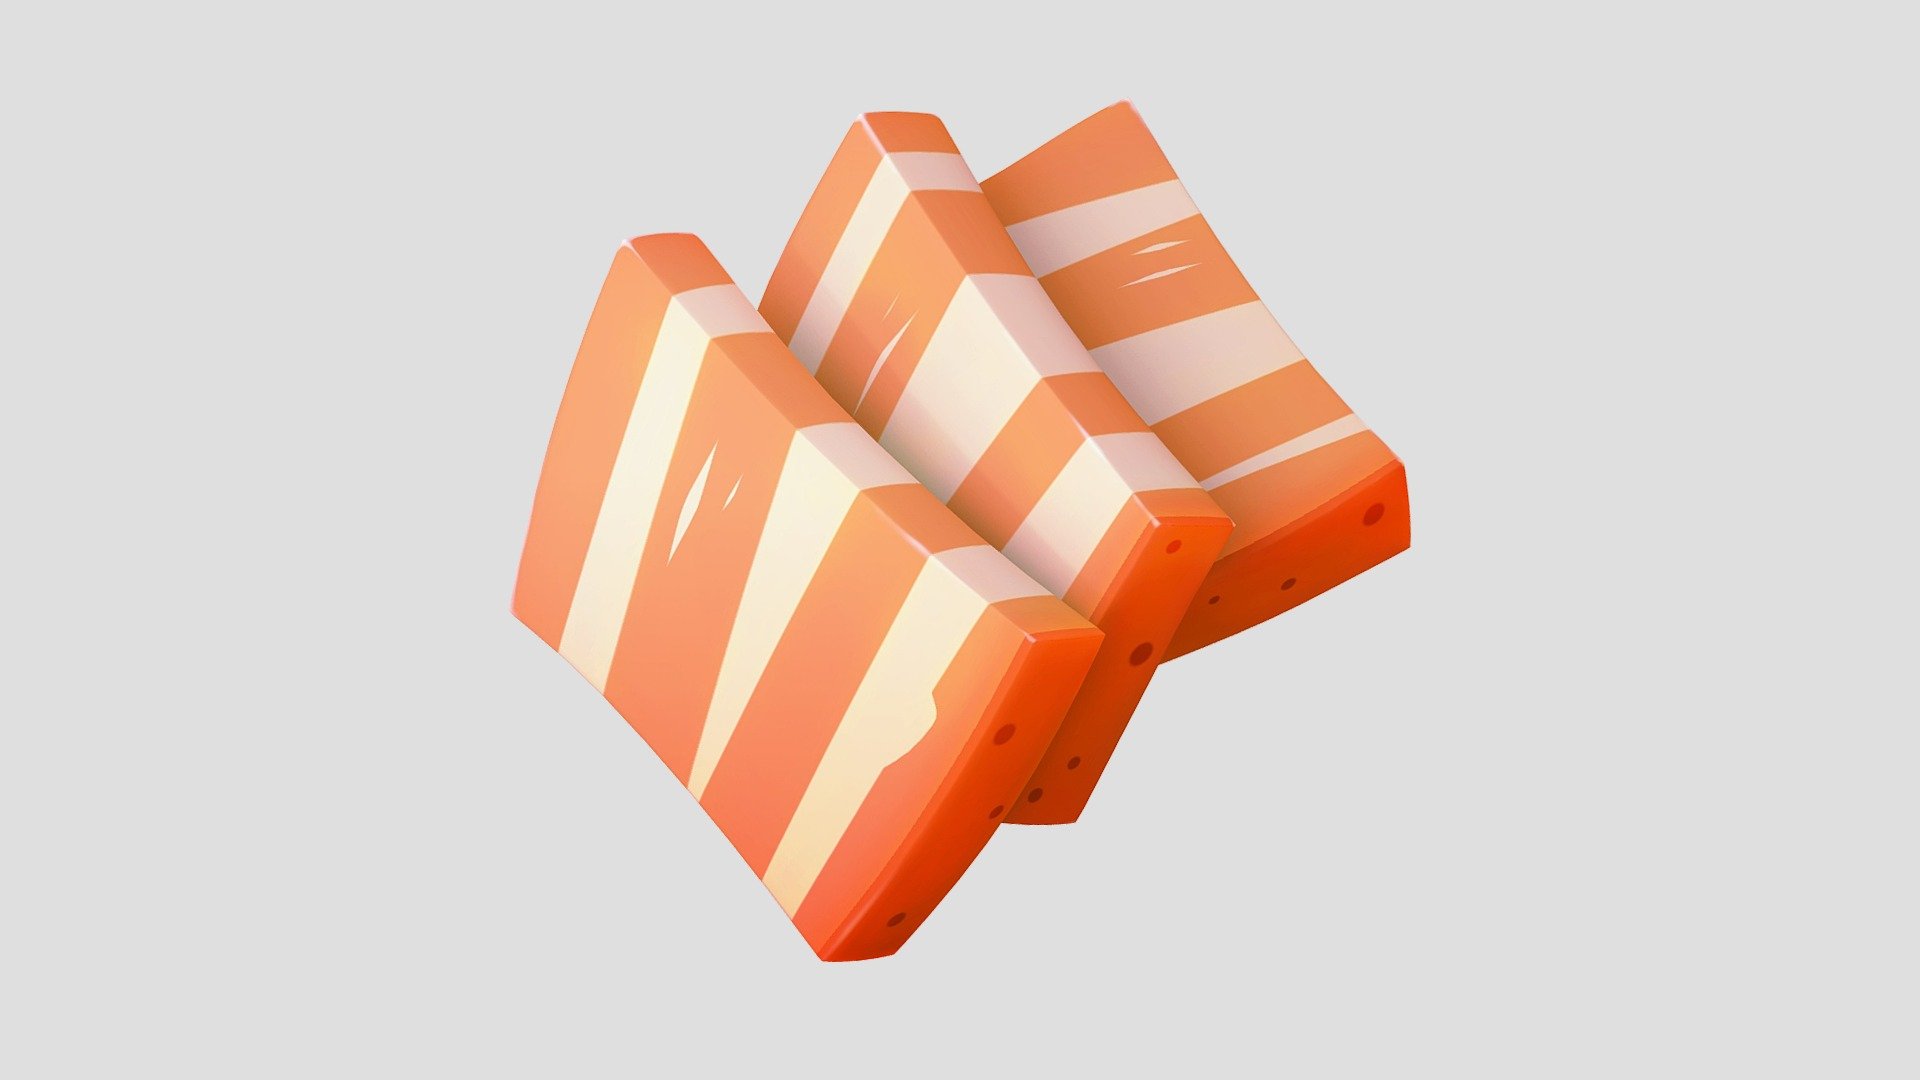 Bacon - 3D model by mikatadze 3d model